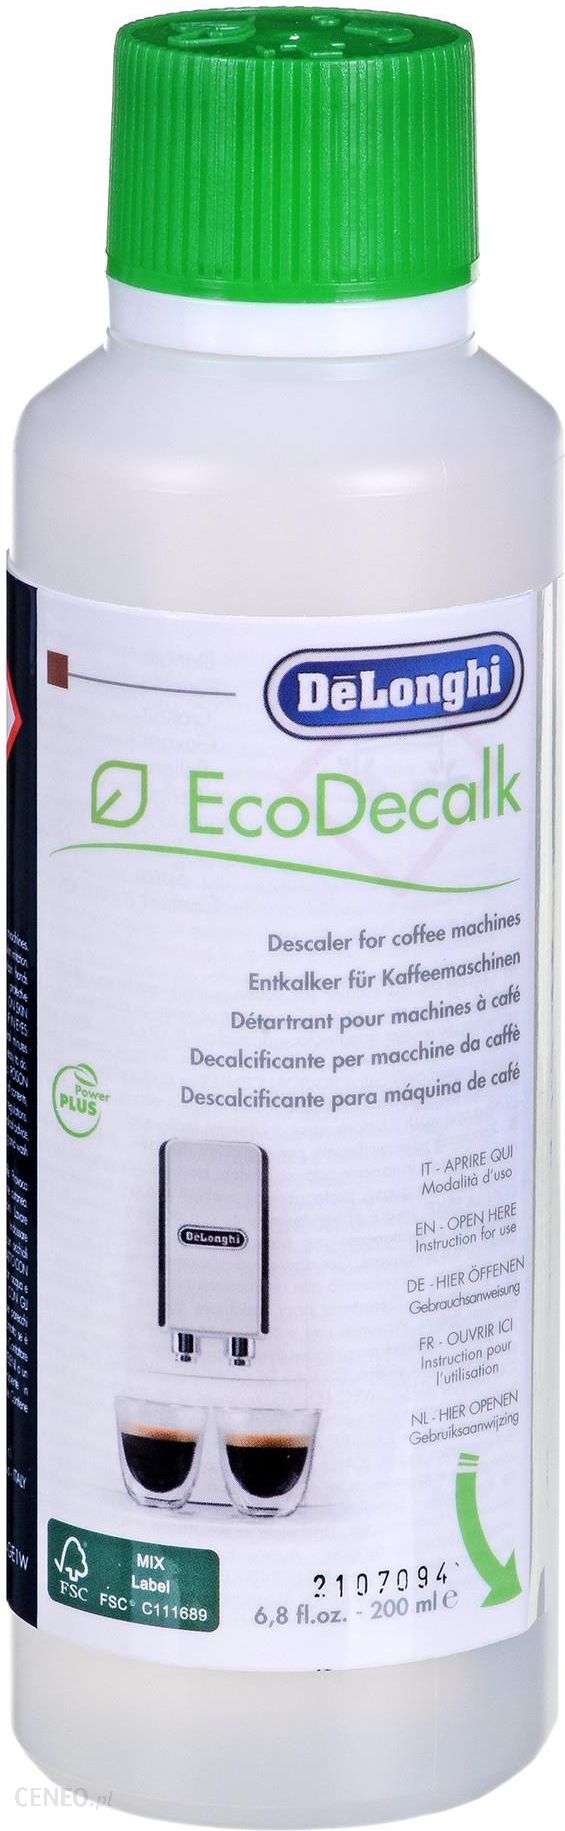 De'Longhi Ecodecalk Mini 2x100ml - Opinie i atrakcyjne ceny na